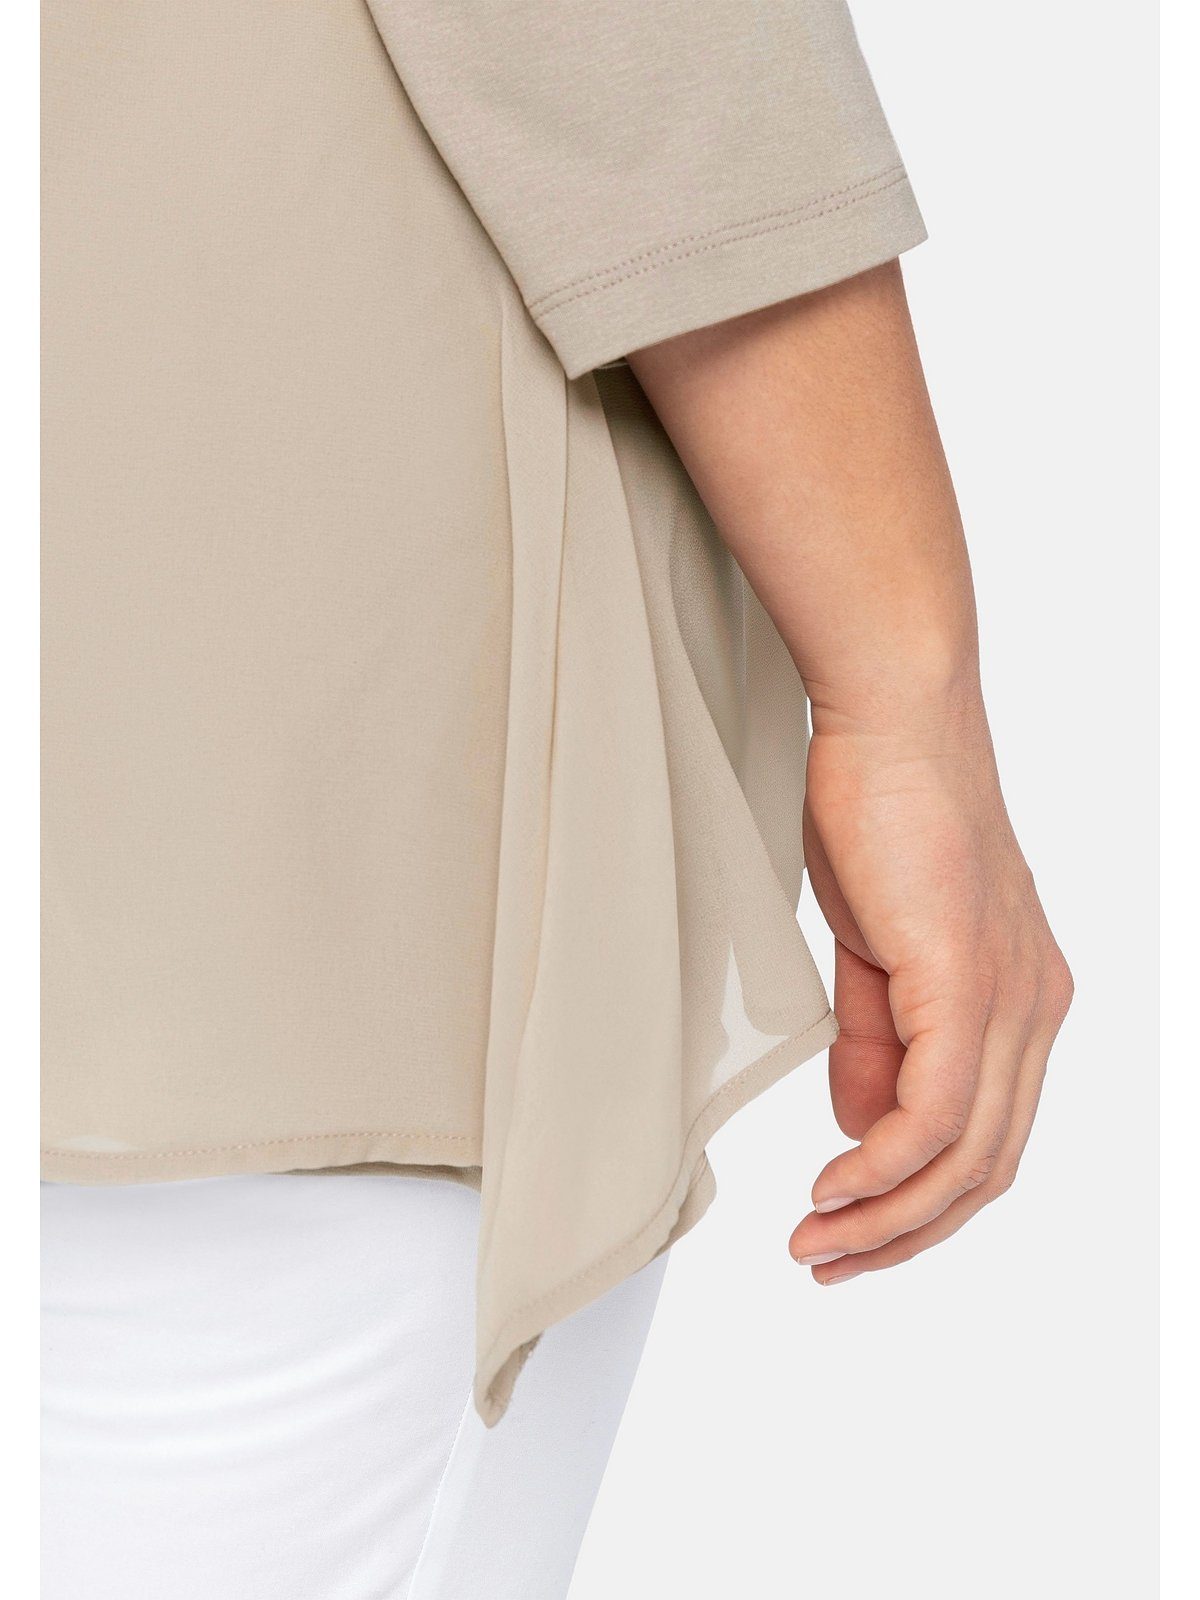 leichter in Sheego Zipfelsaum Große Blusenshirt A-Linie beigefarben Größen mit